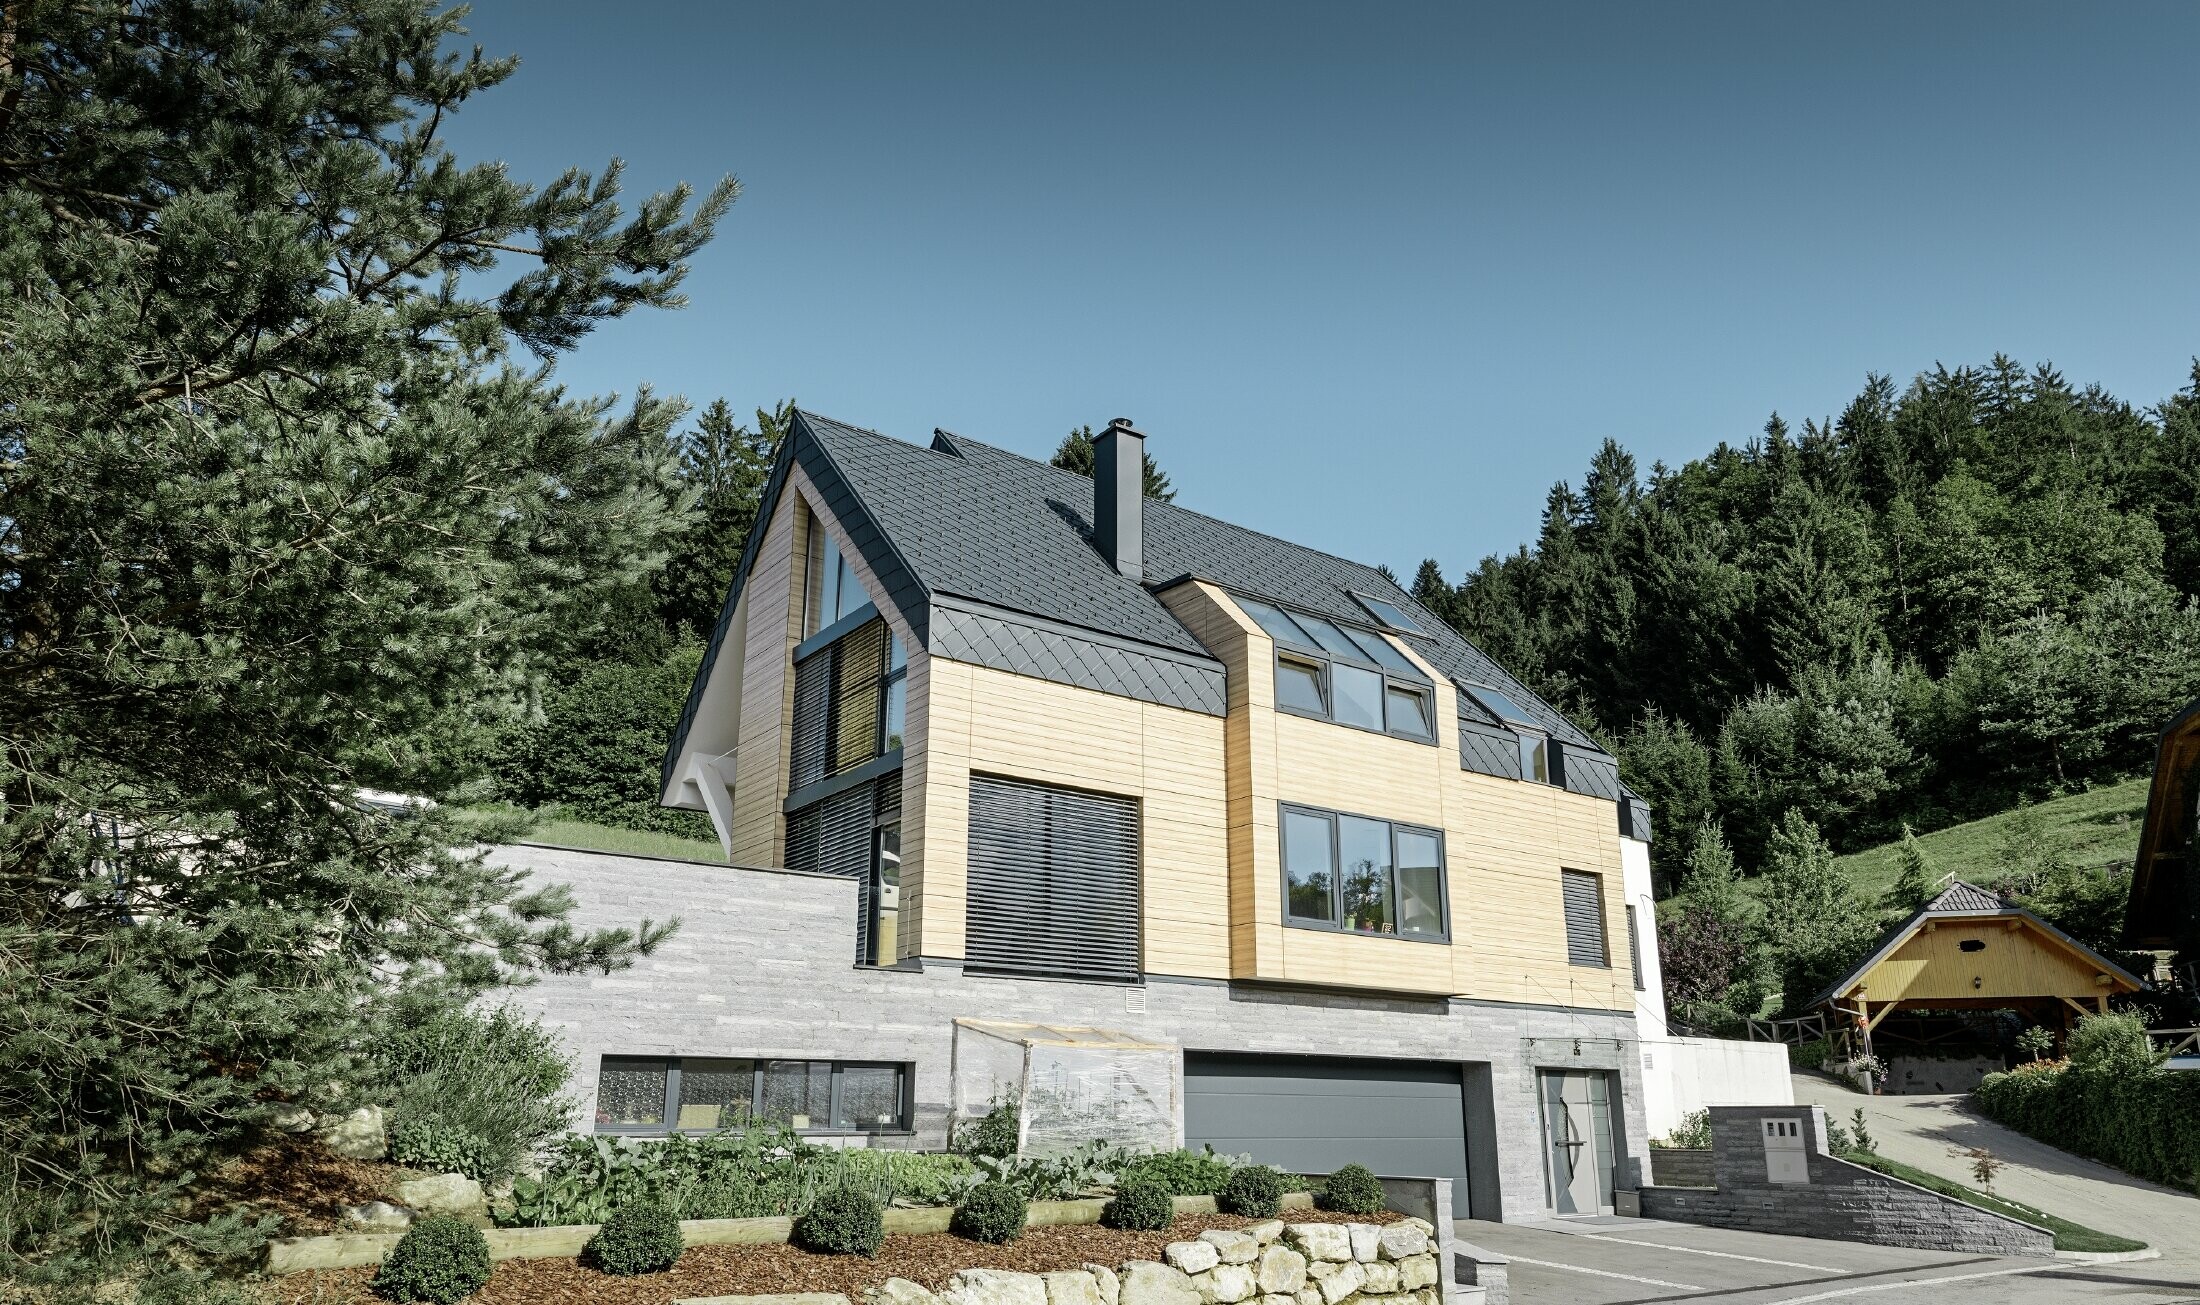 Obiteljska kuća s dvostrešnim krovom bez nadstrešnice s fasadom u optici drva i aluminijskim krovom u antracit boji